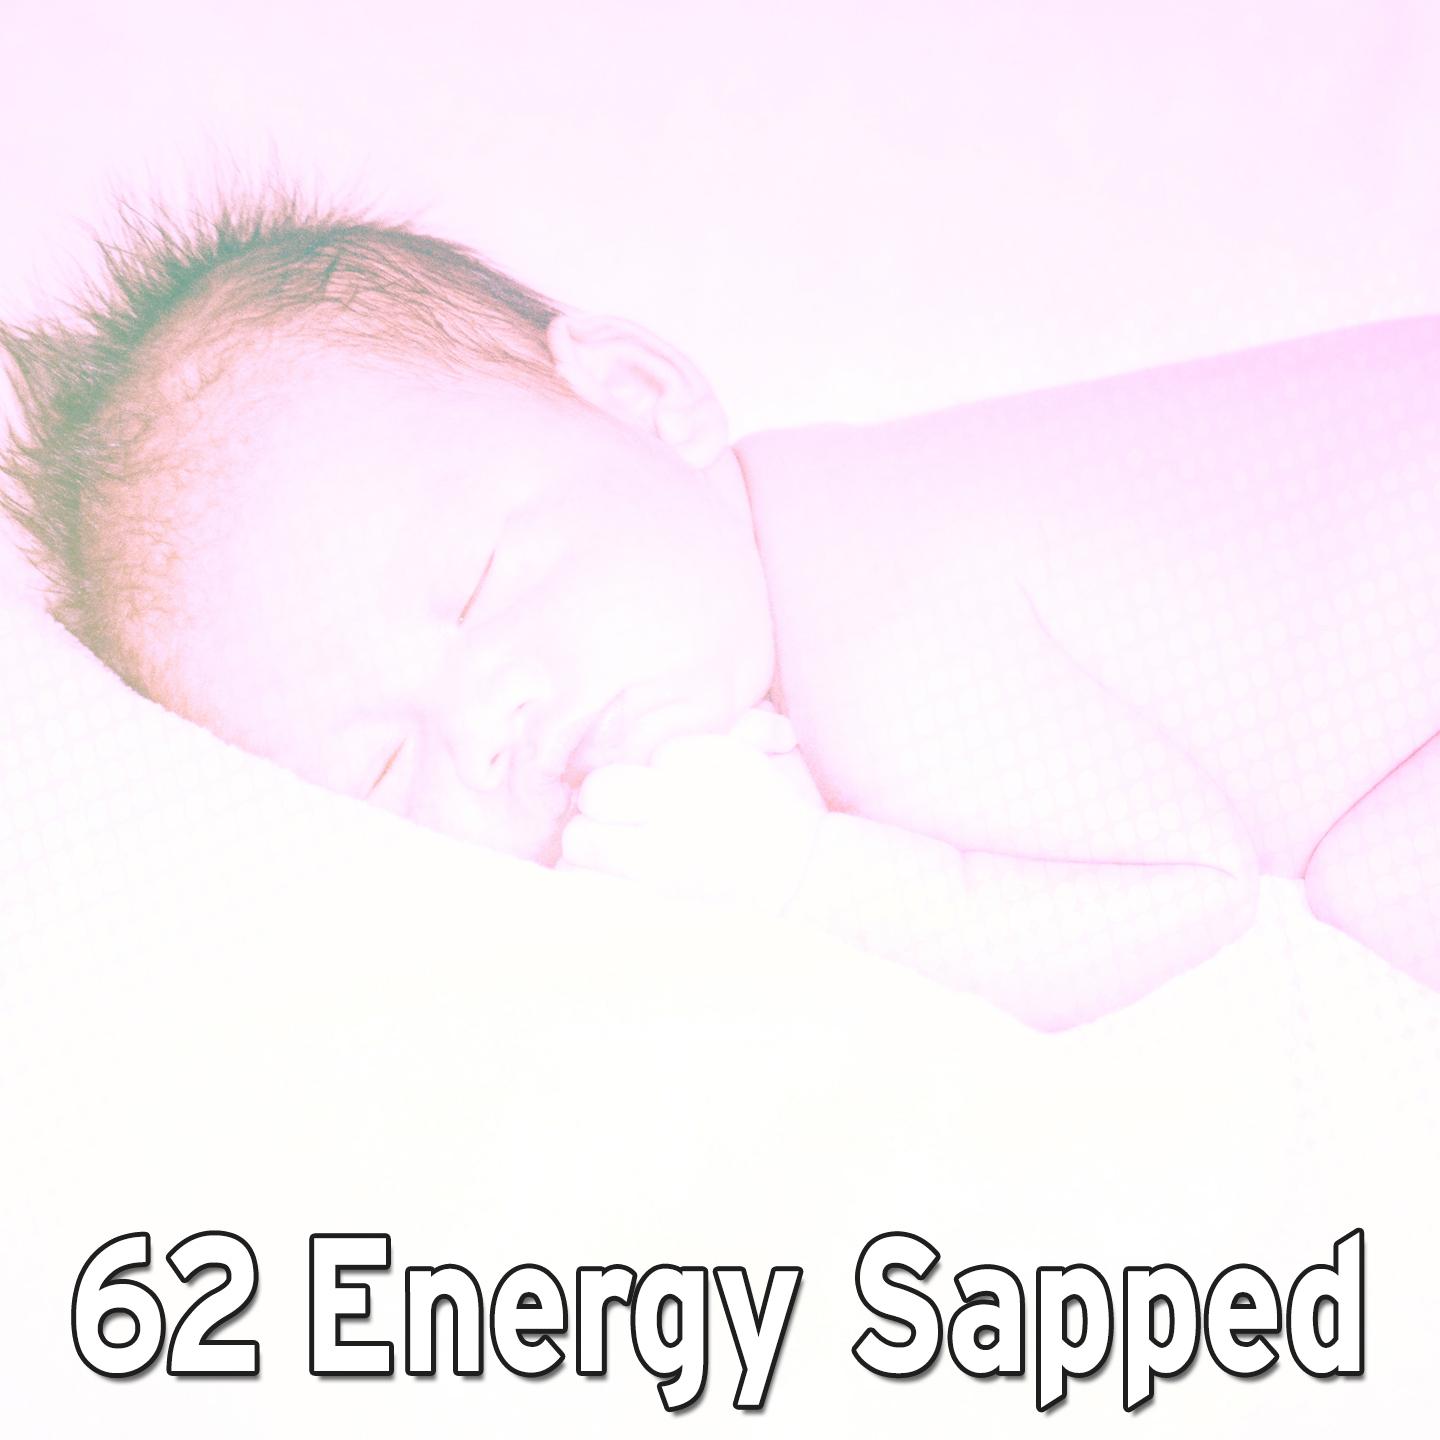 62 Energy Sapped